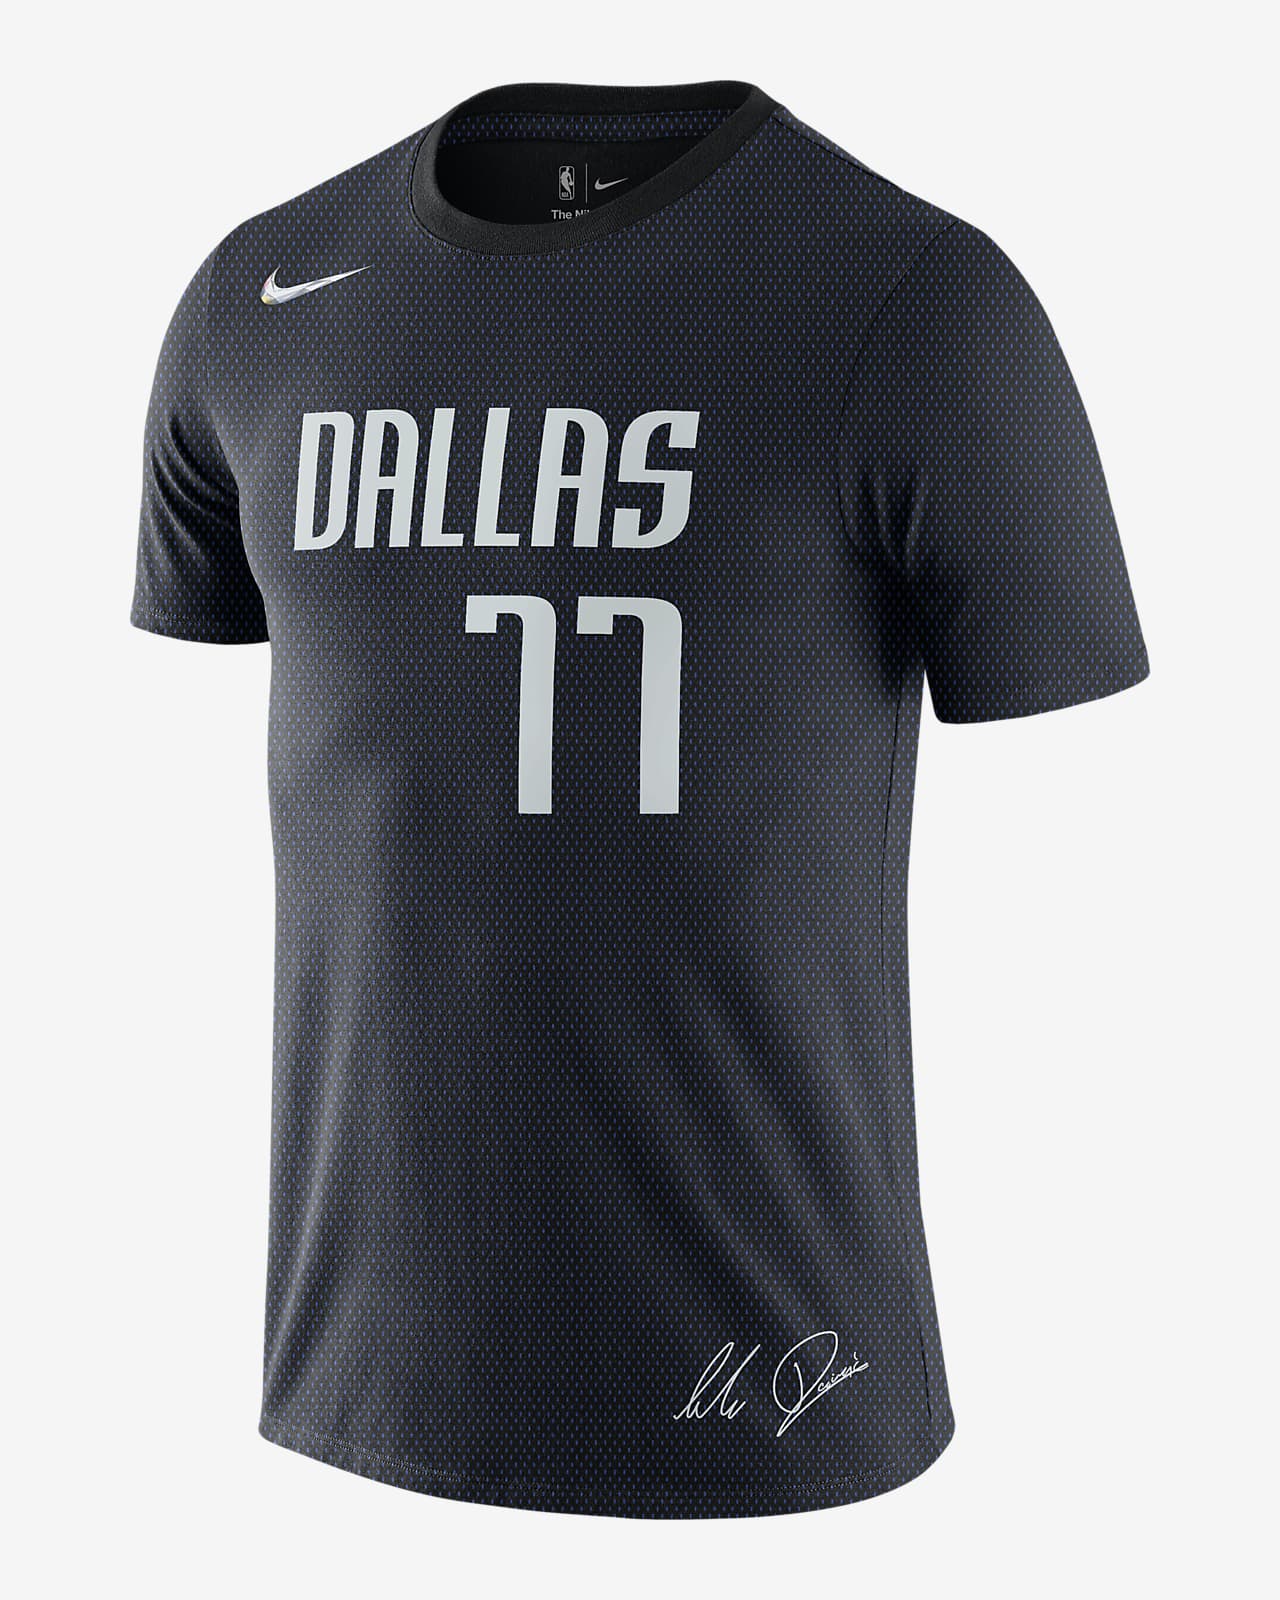 NIKE公式ルカ ドンチッチ マーベリックス メンズ ナイキ NBA Tシャツ.オンラインストア (通販サイト)